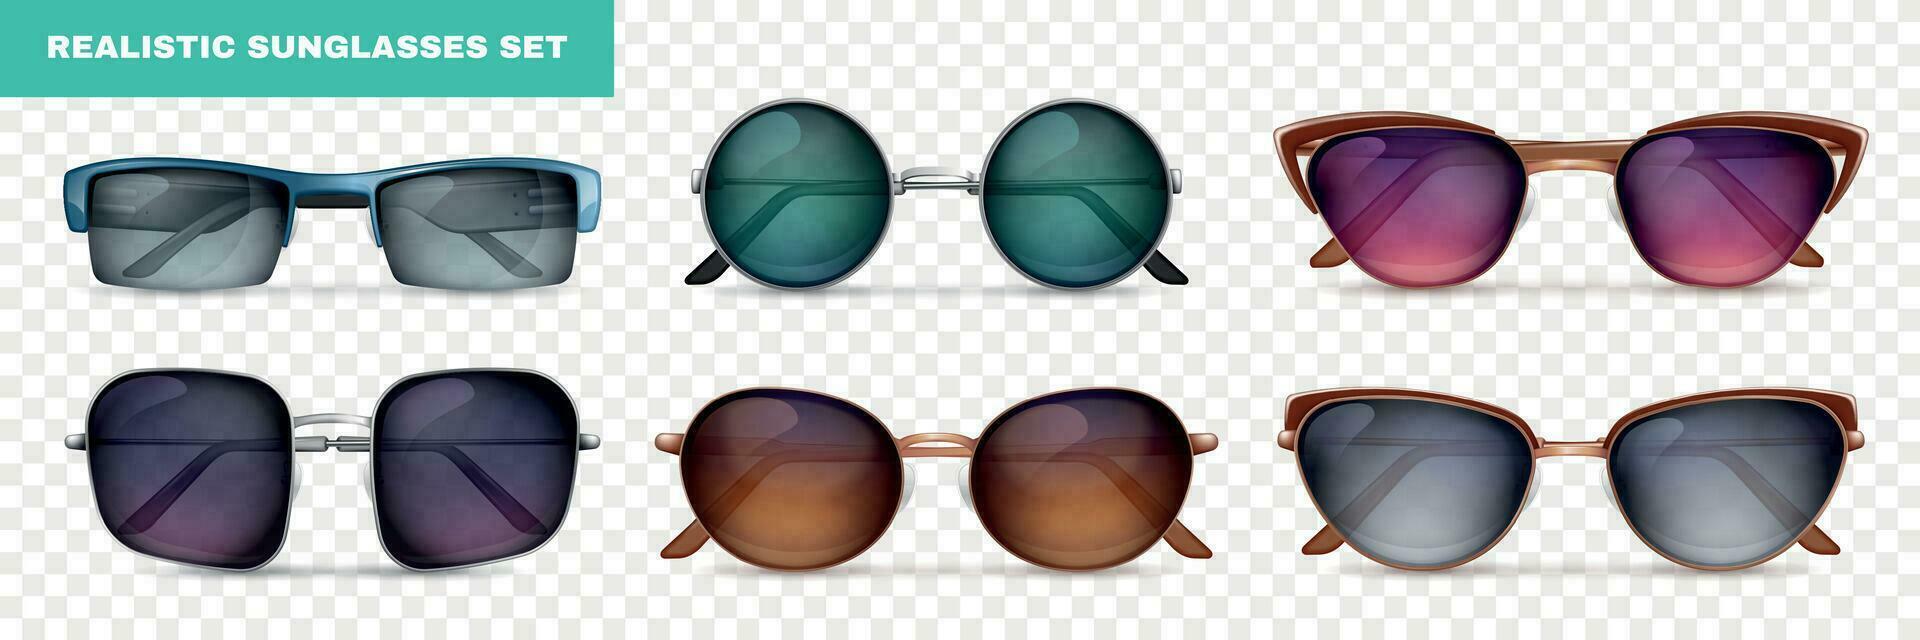 conjunto de gafas de sol realistas vector